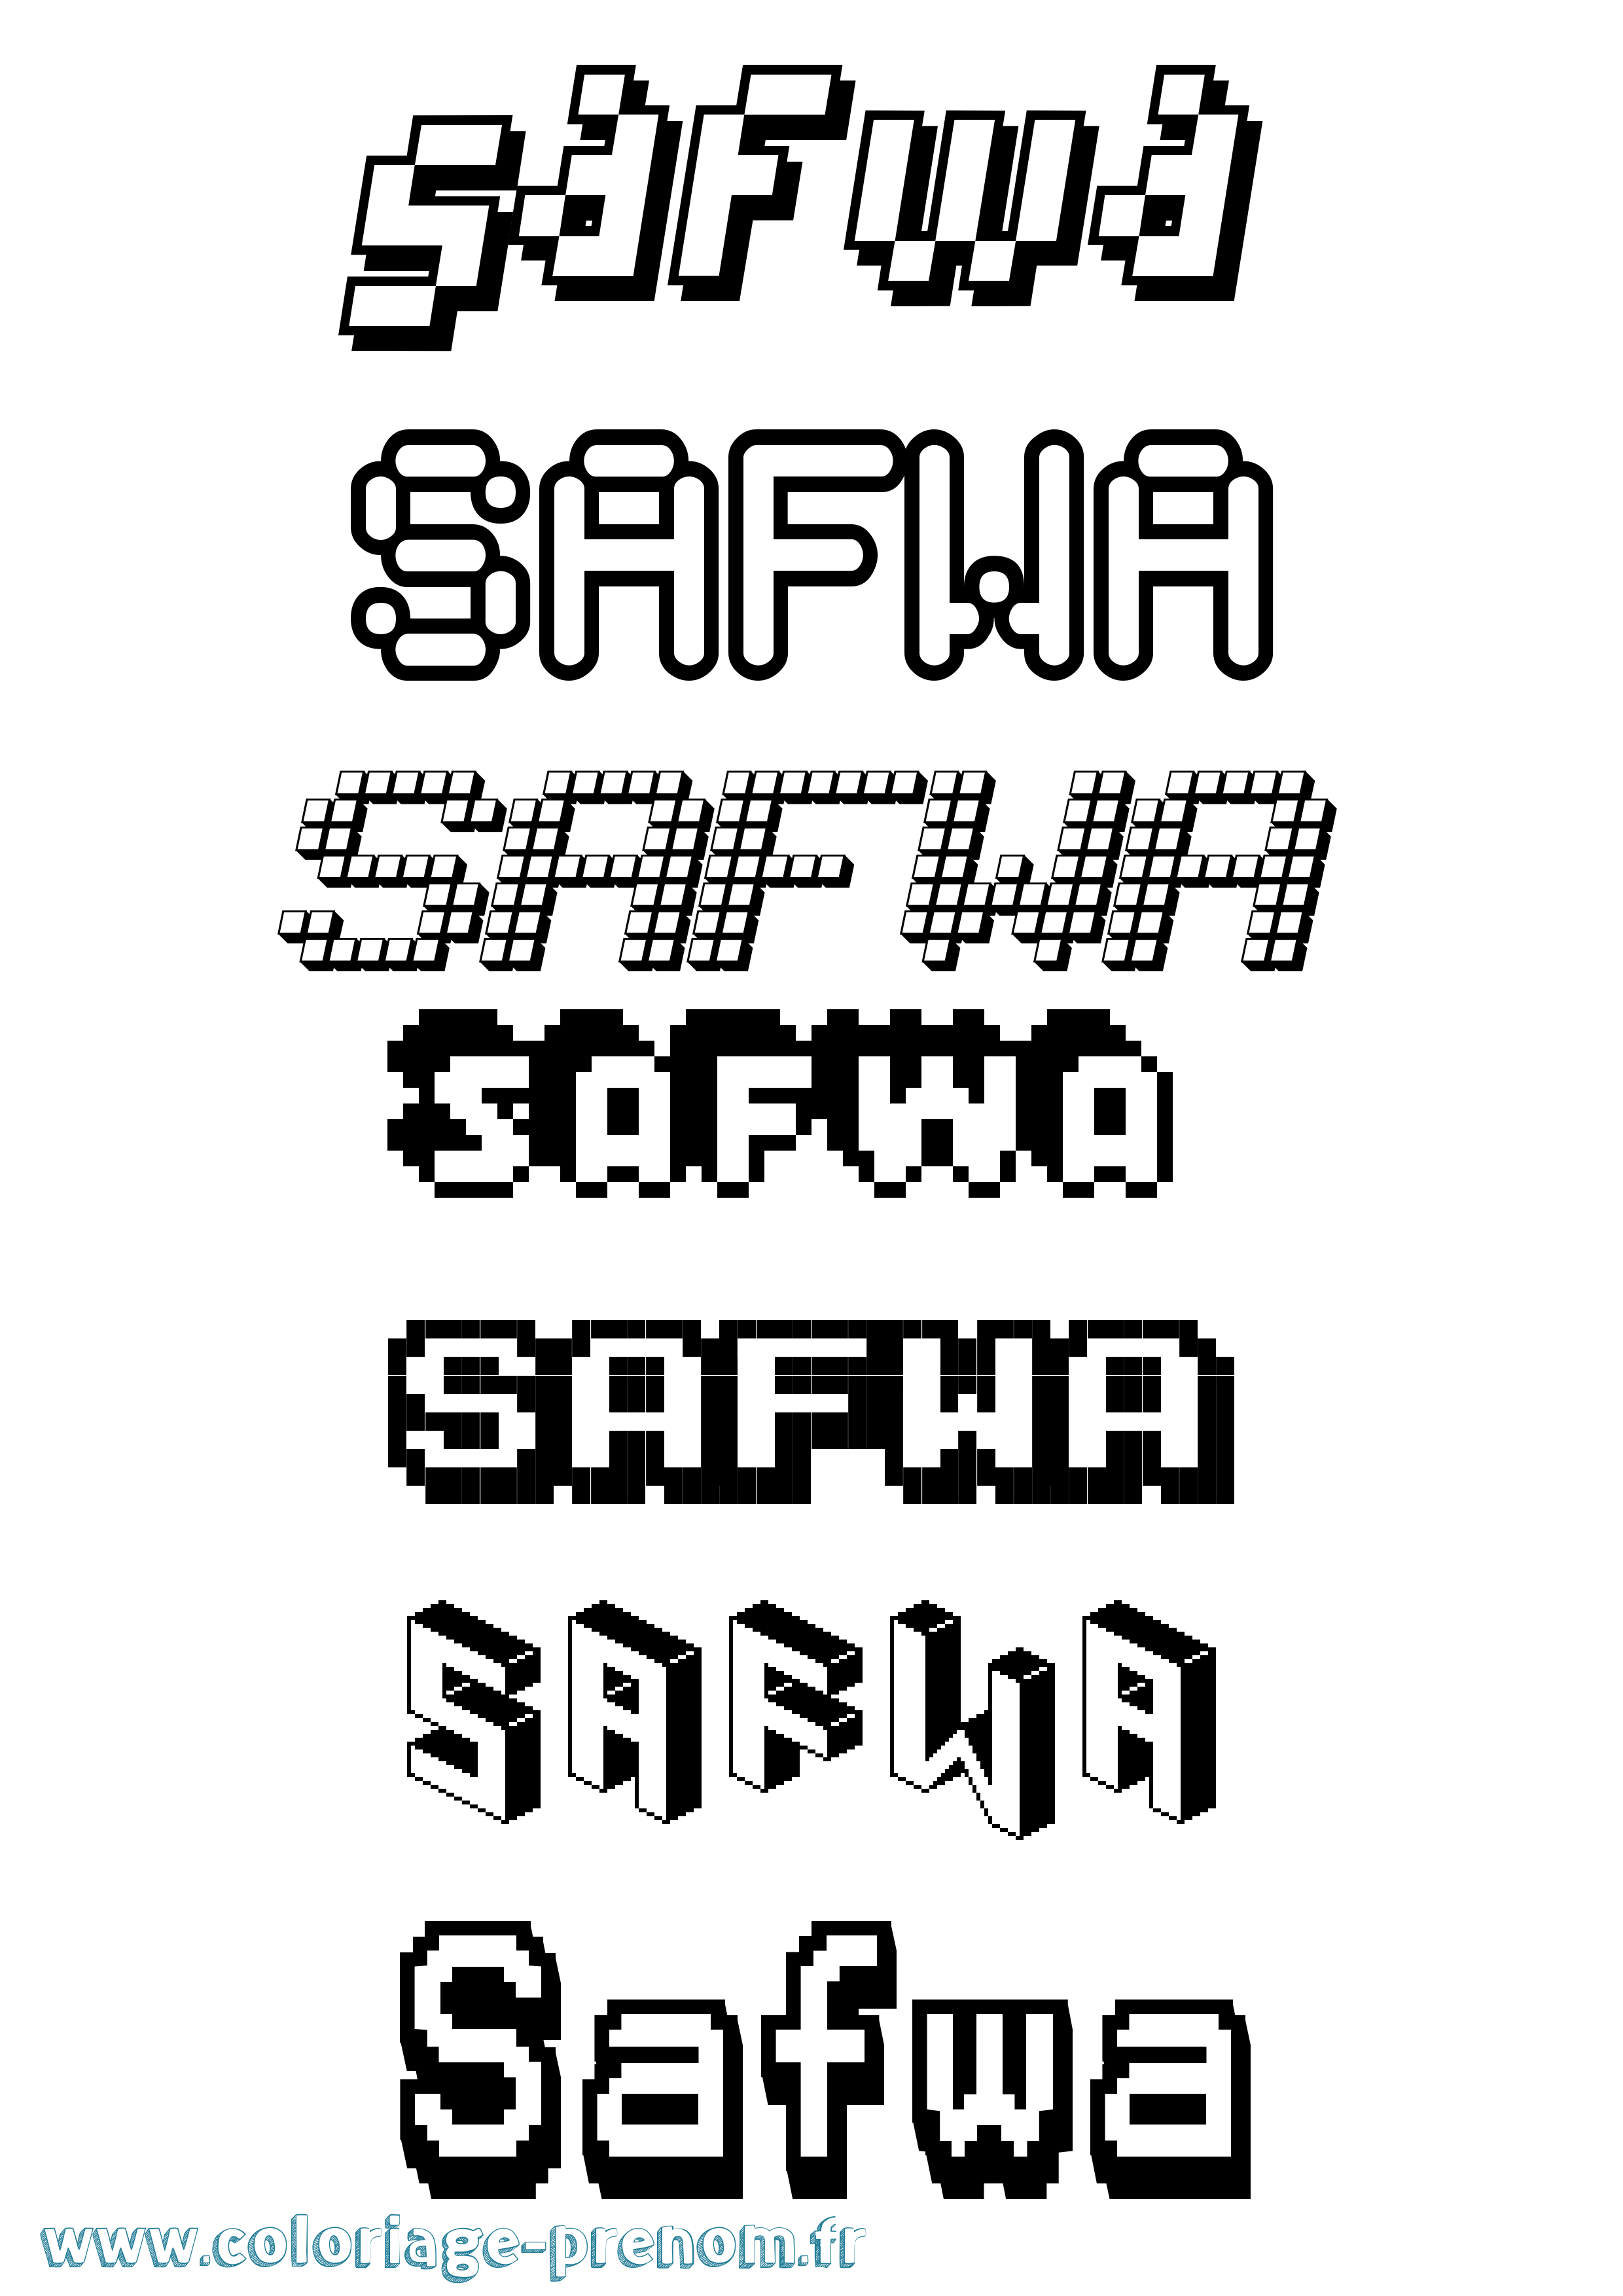 Coloriage prénom Safwa Pixel